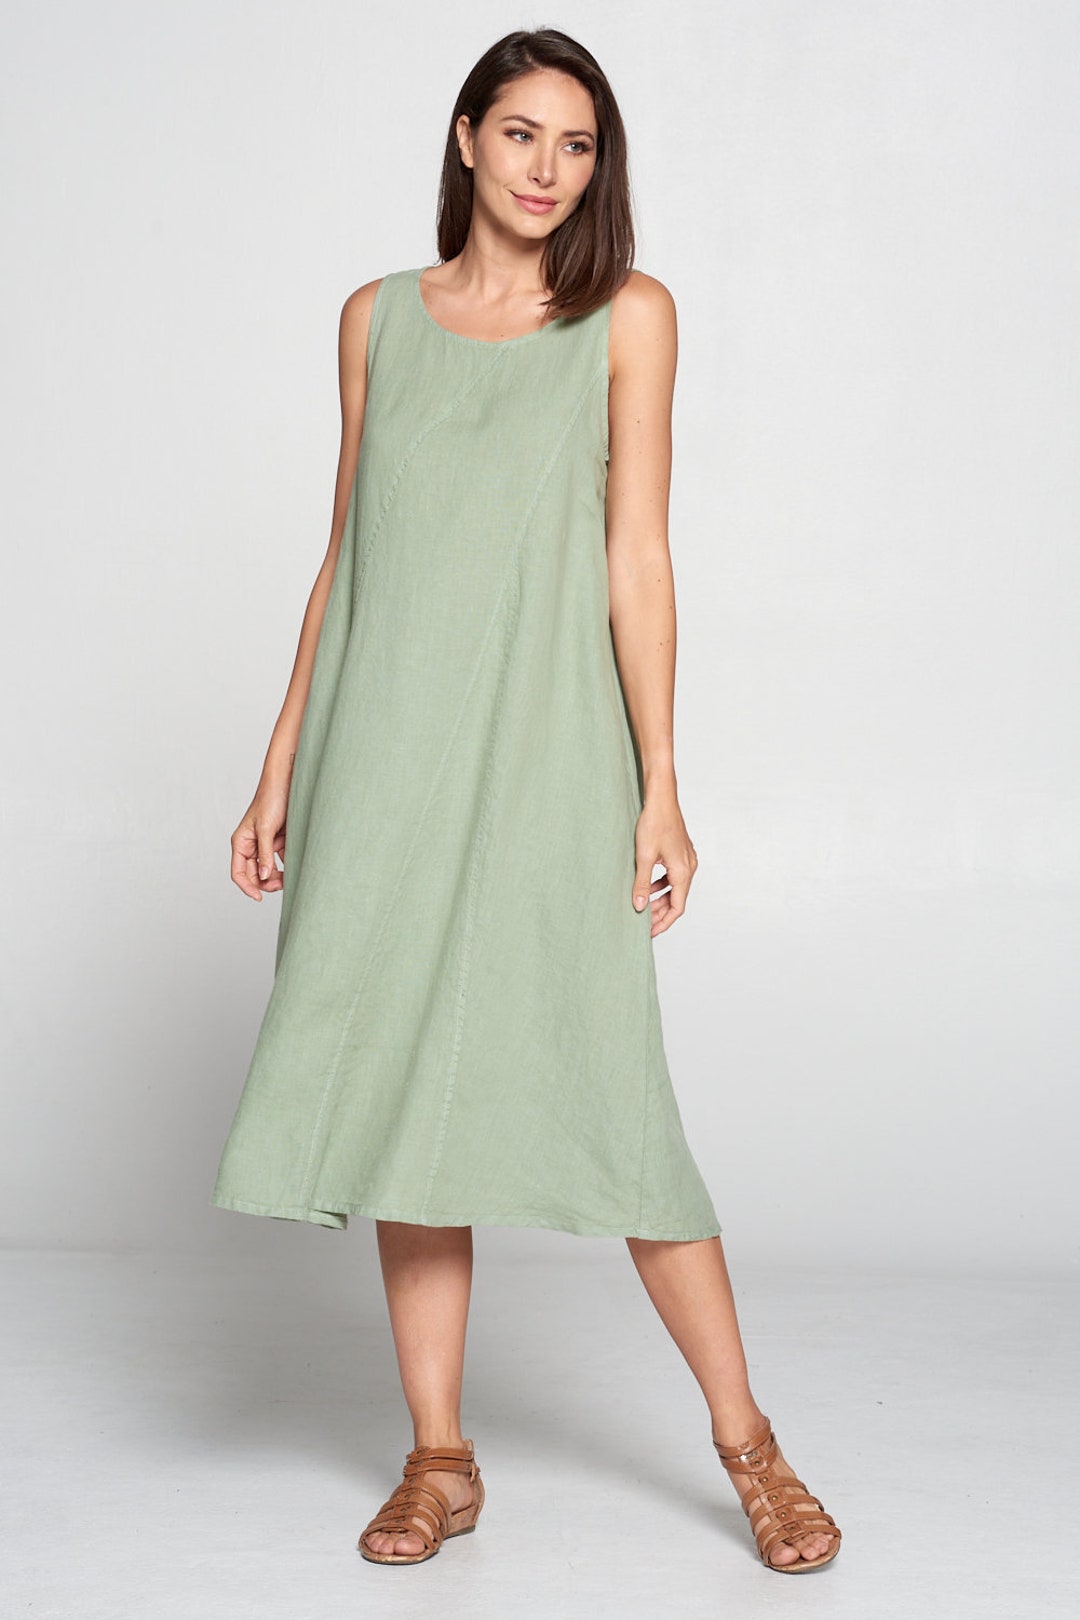 Pure Match 100% Linen Sleeveless Dress Side Hidden Pockets - Etsy